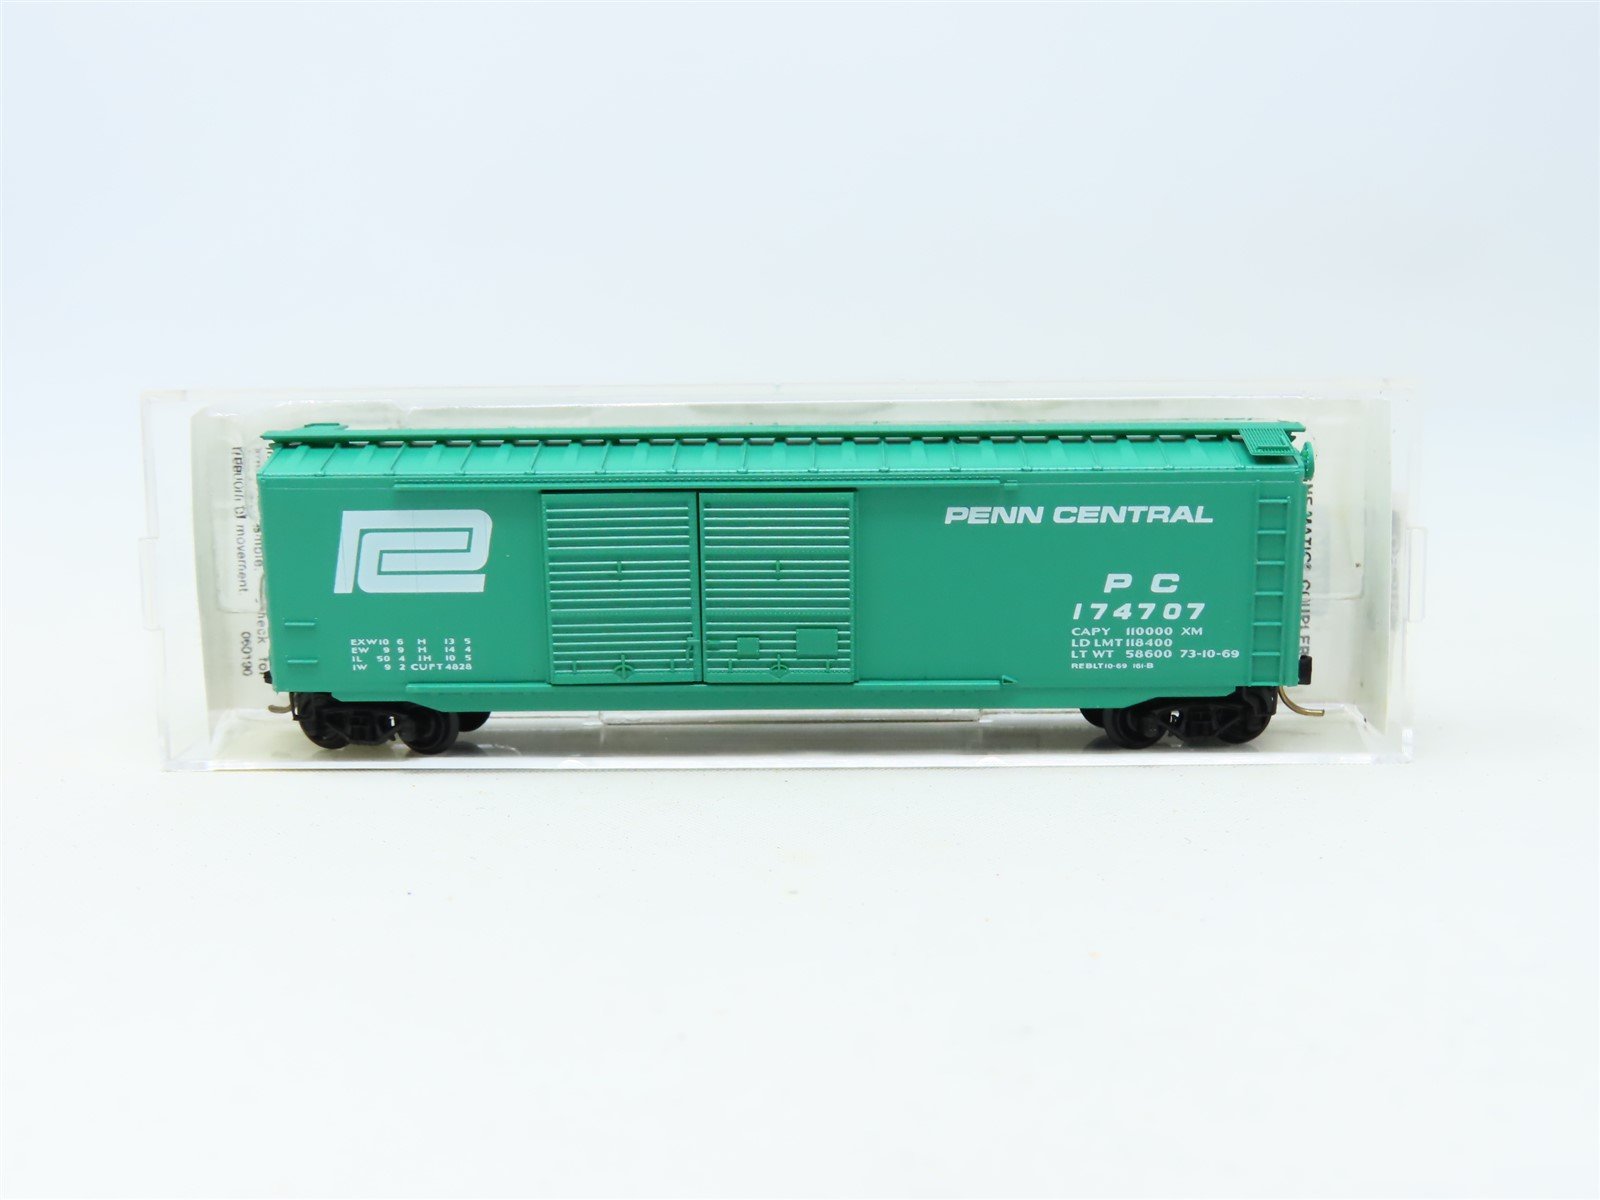 N Scale Micro-Trains MTL 34020 PC Penn Central 50' Box Car #174707